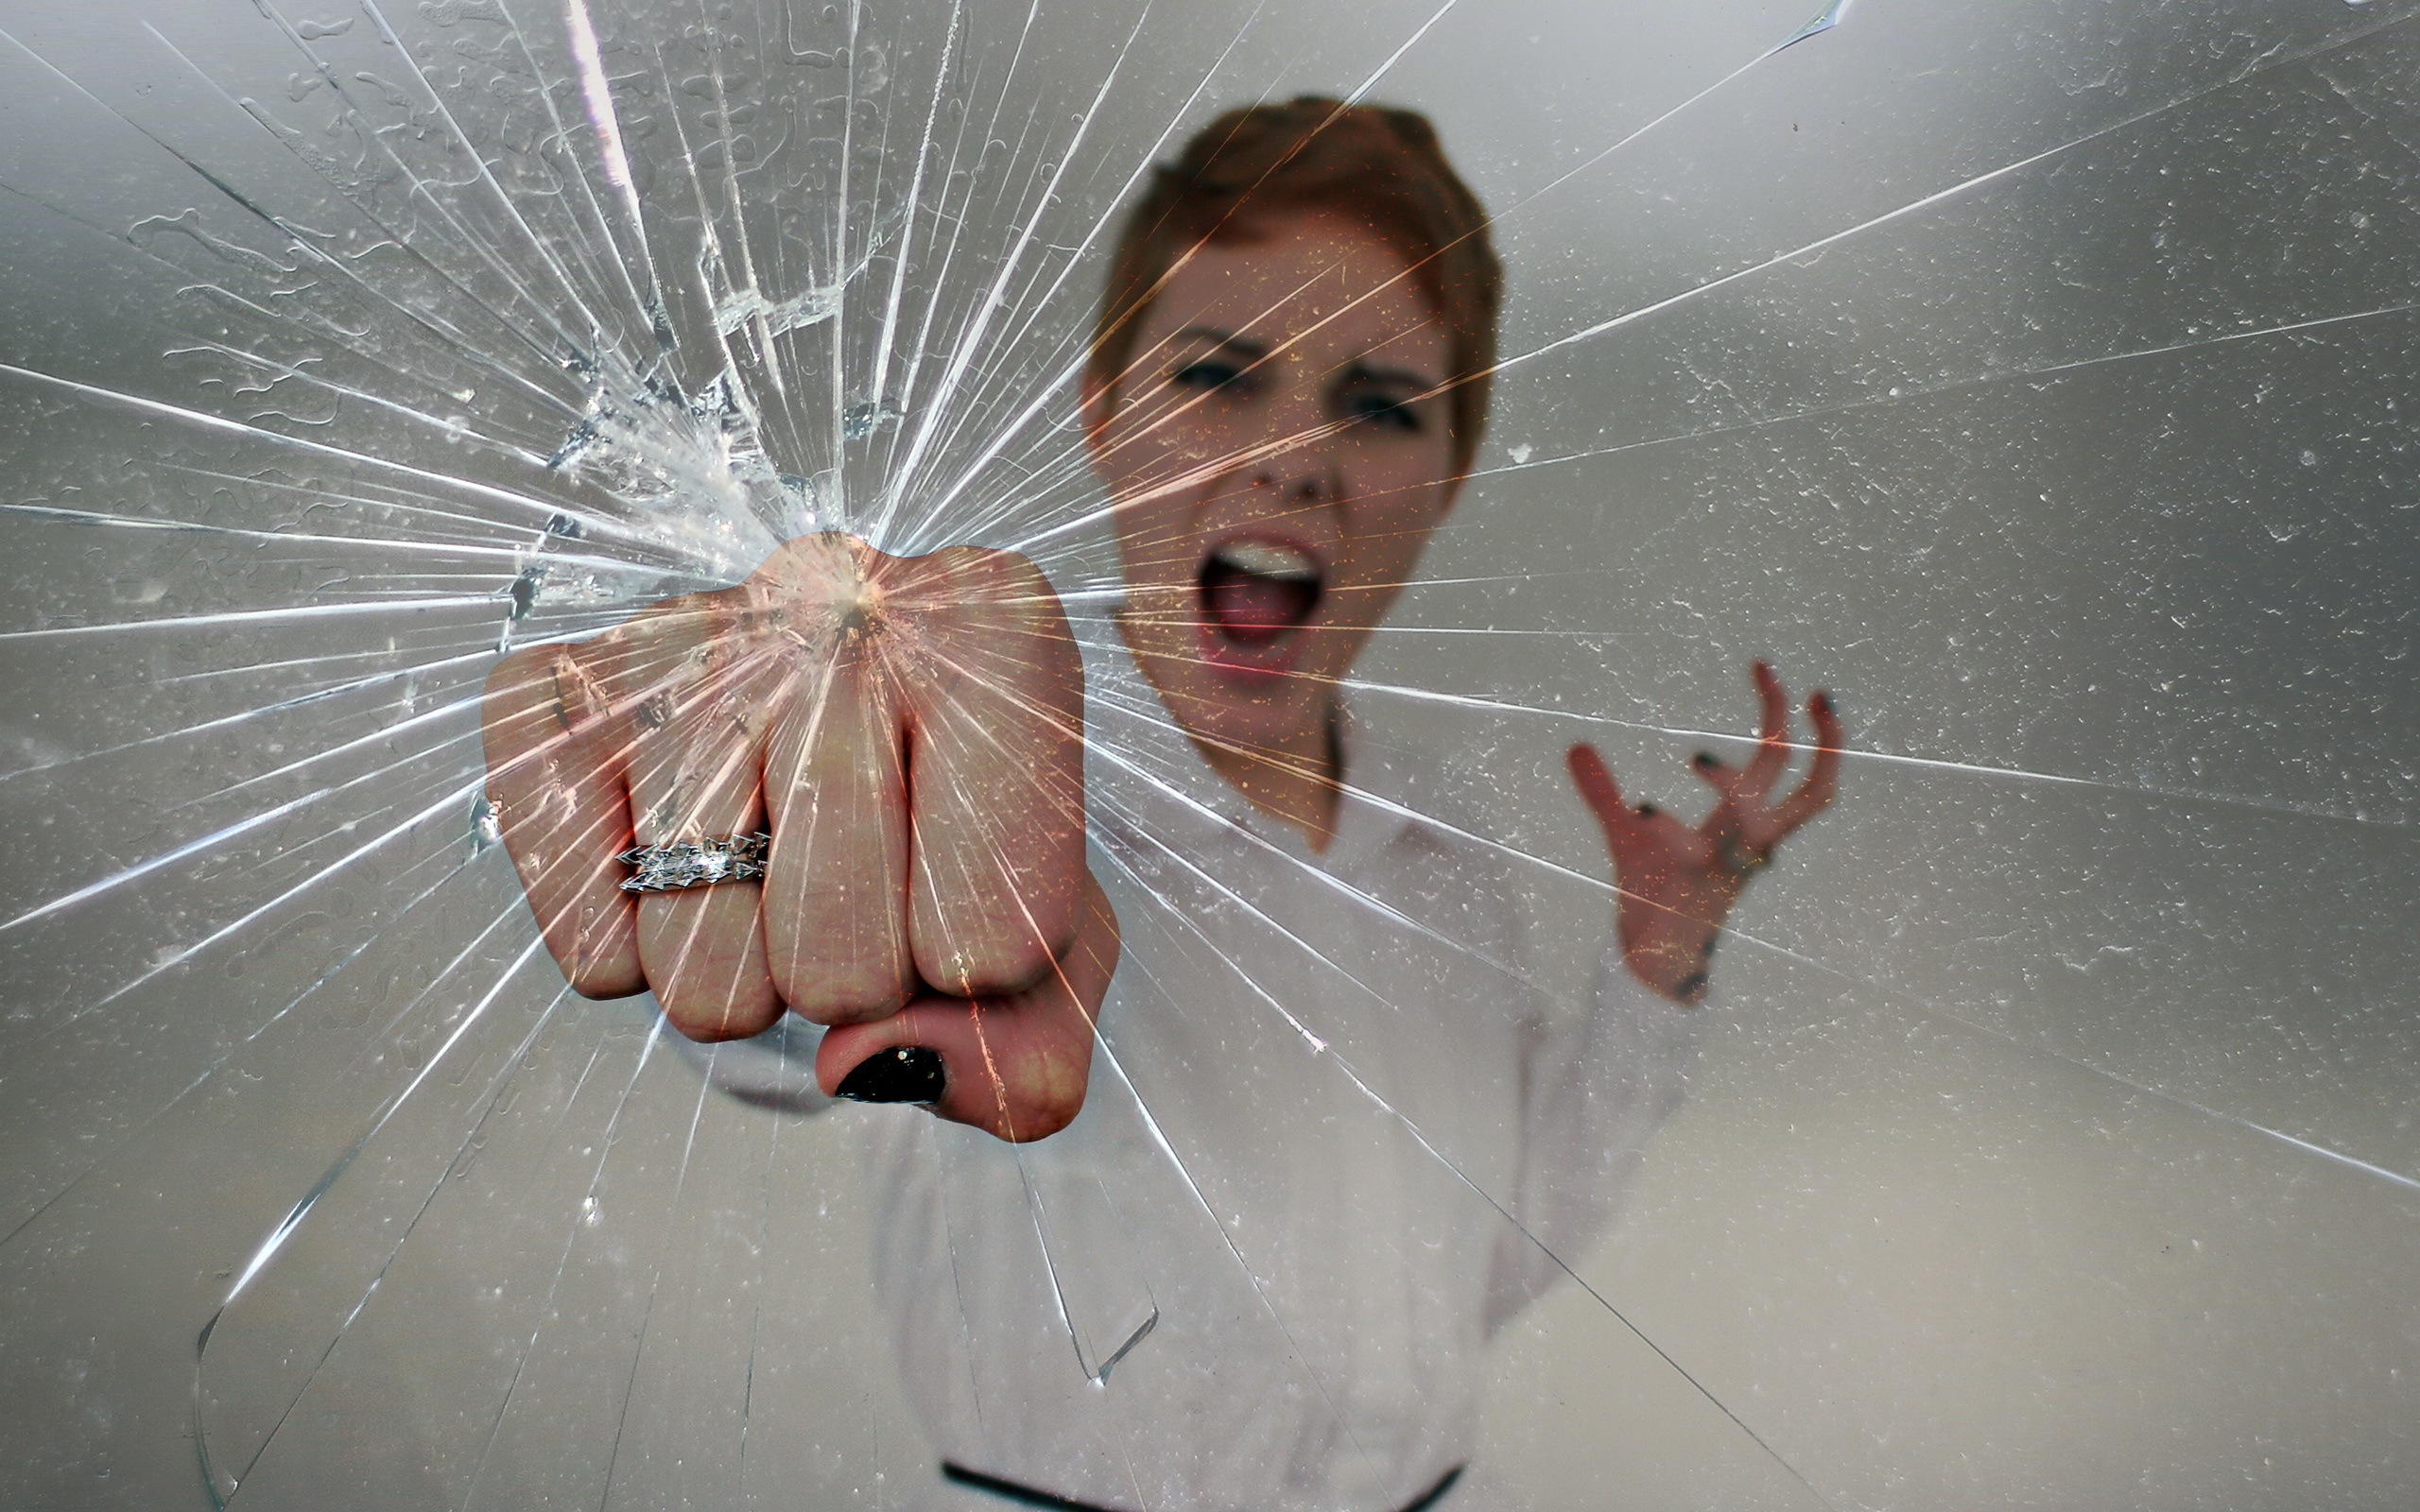 Разбить бесплатный. Разбитое стекло. Человек разбивает стекло. Разбить стекло. Фотосессия с разбитым стеклом.